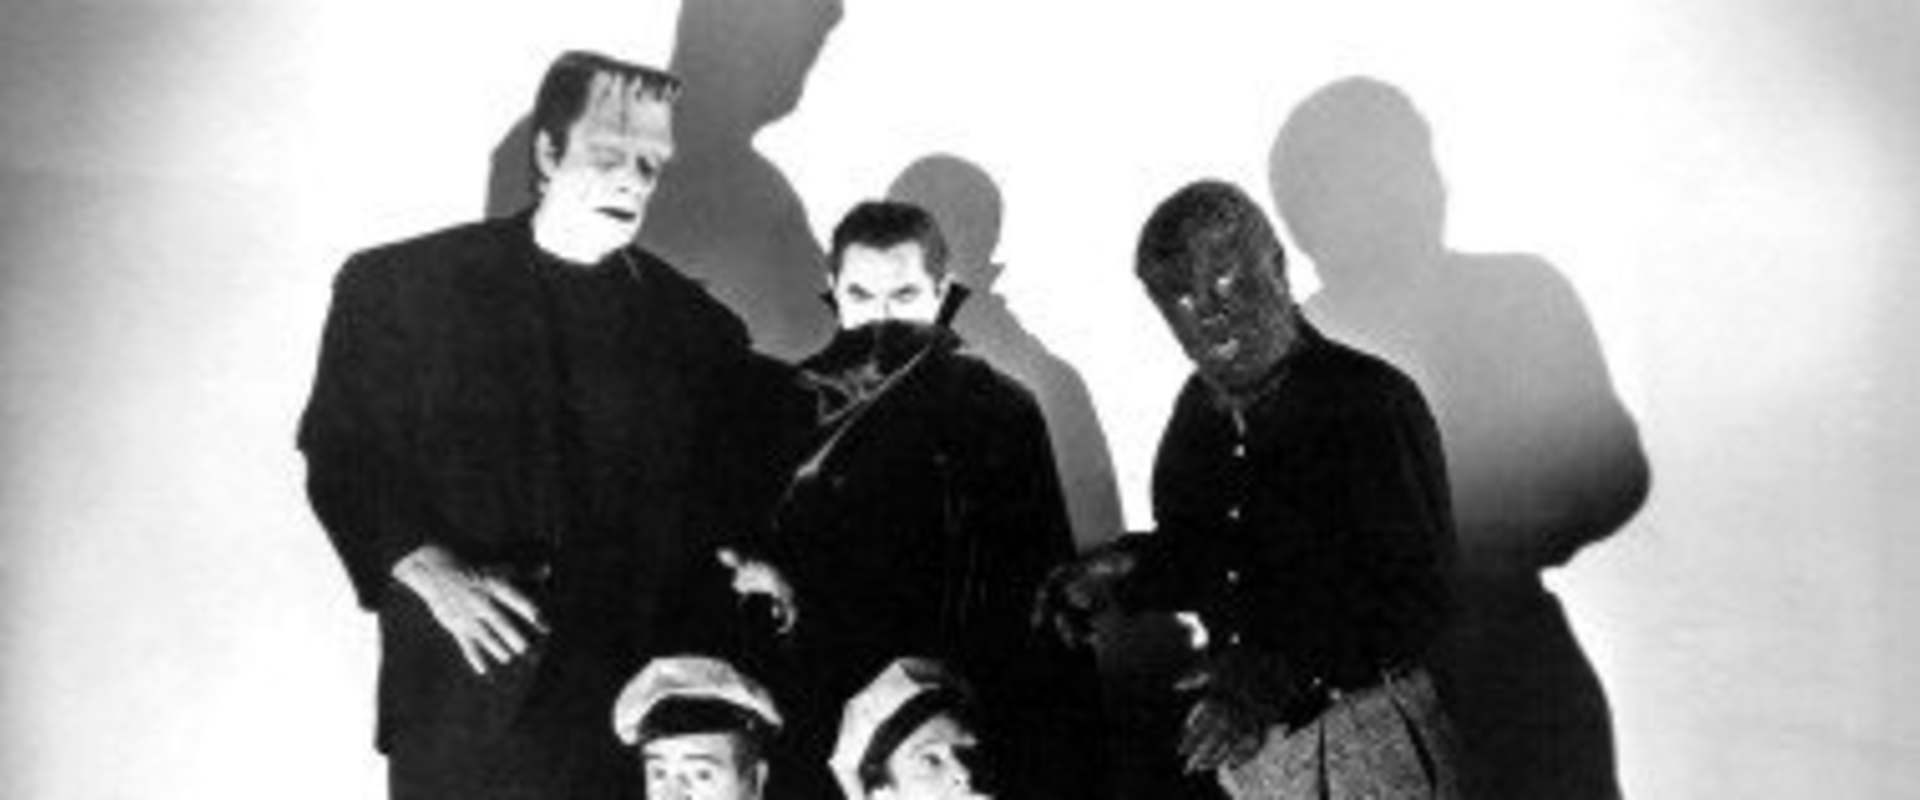 Bud Abbott and Lou Costello meet Frankenstein background 2